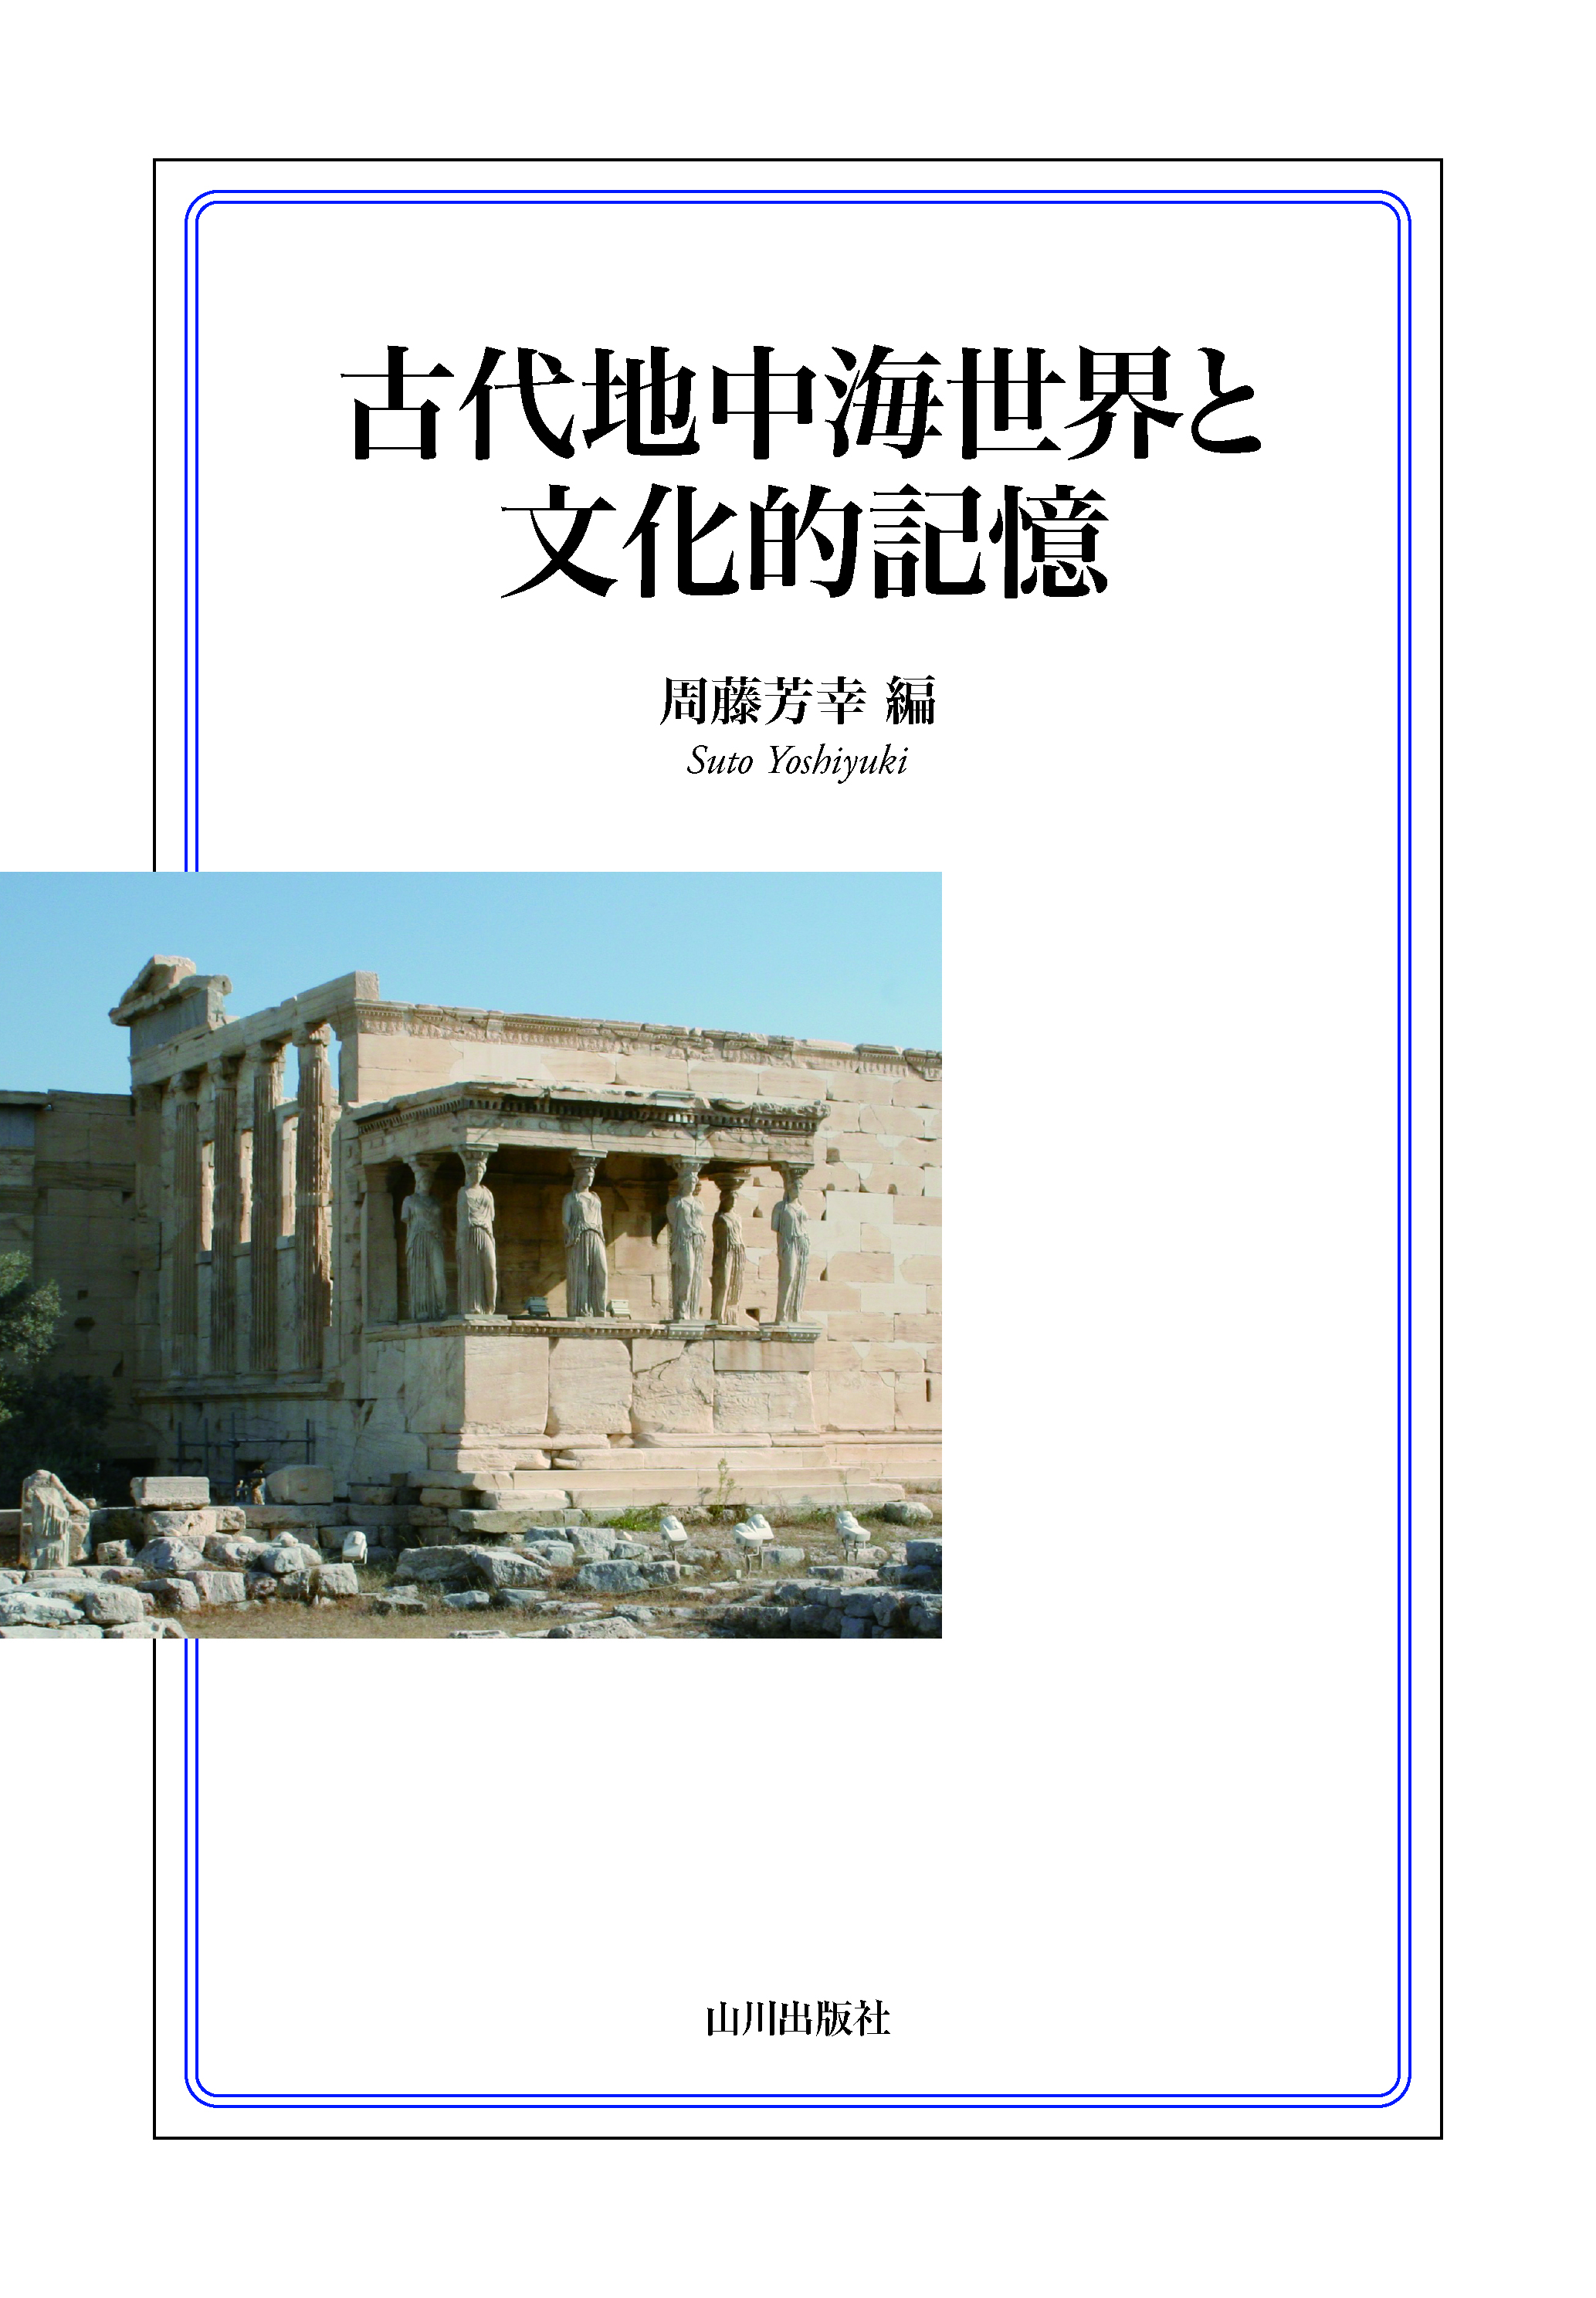 白い表紙にエレクテイオン神殿の写真